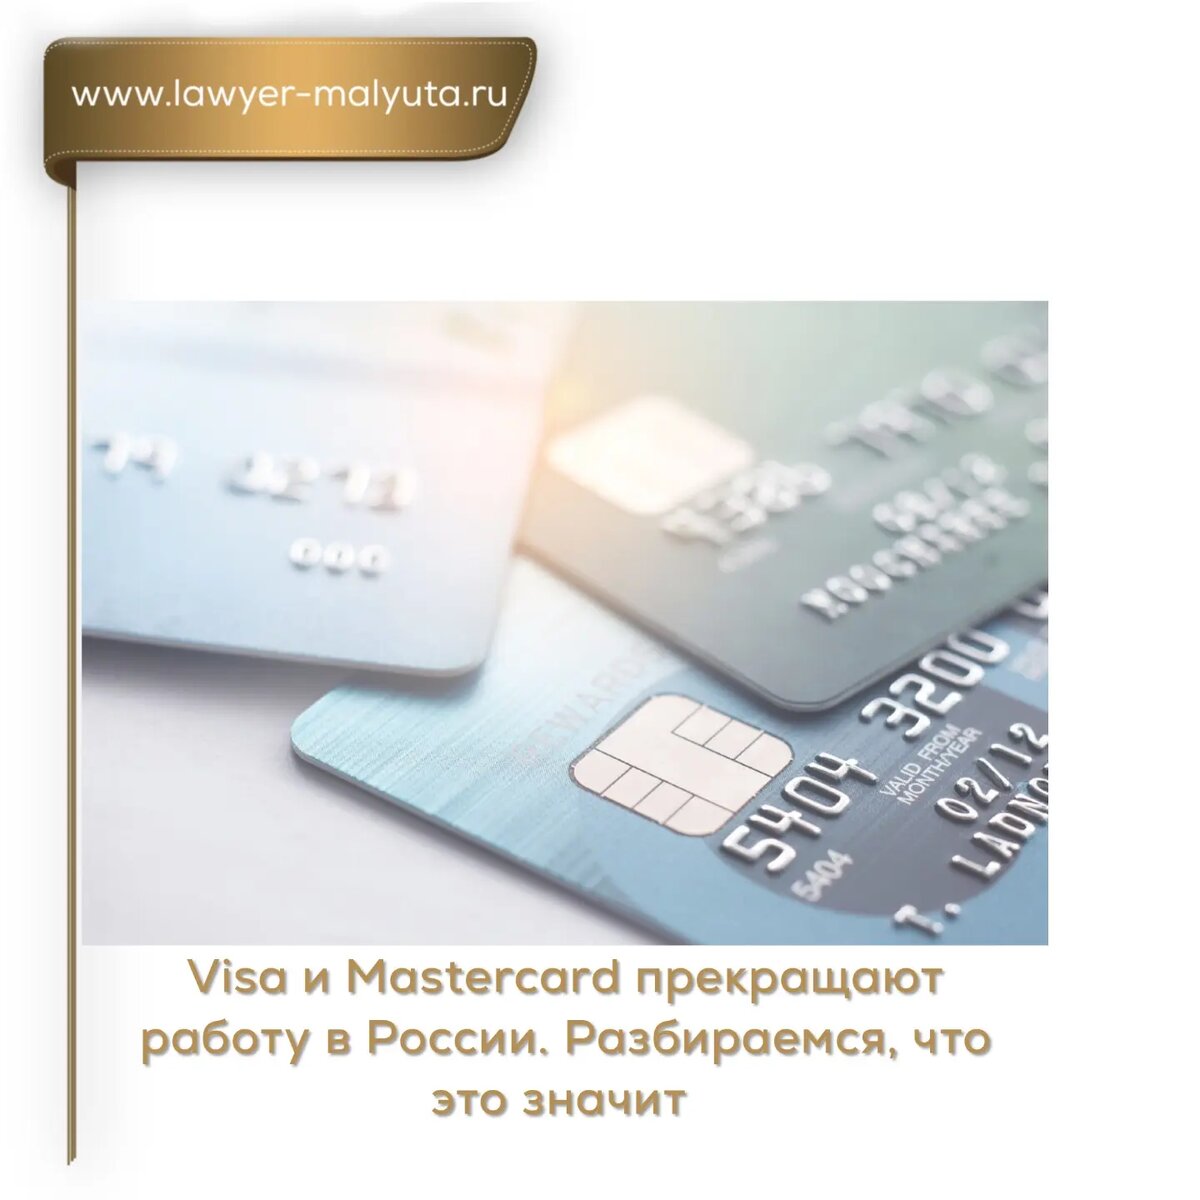 💳 Visa и MasterСard объявили о приостановке своей деятельности в России. Как это отразится на работе карт в России и за рубежом  📌 Что произошло?